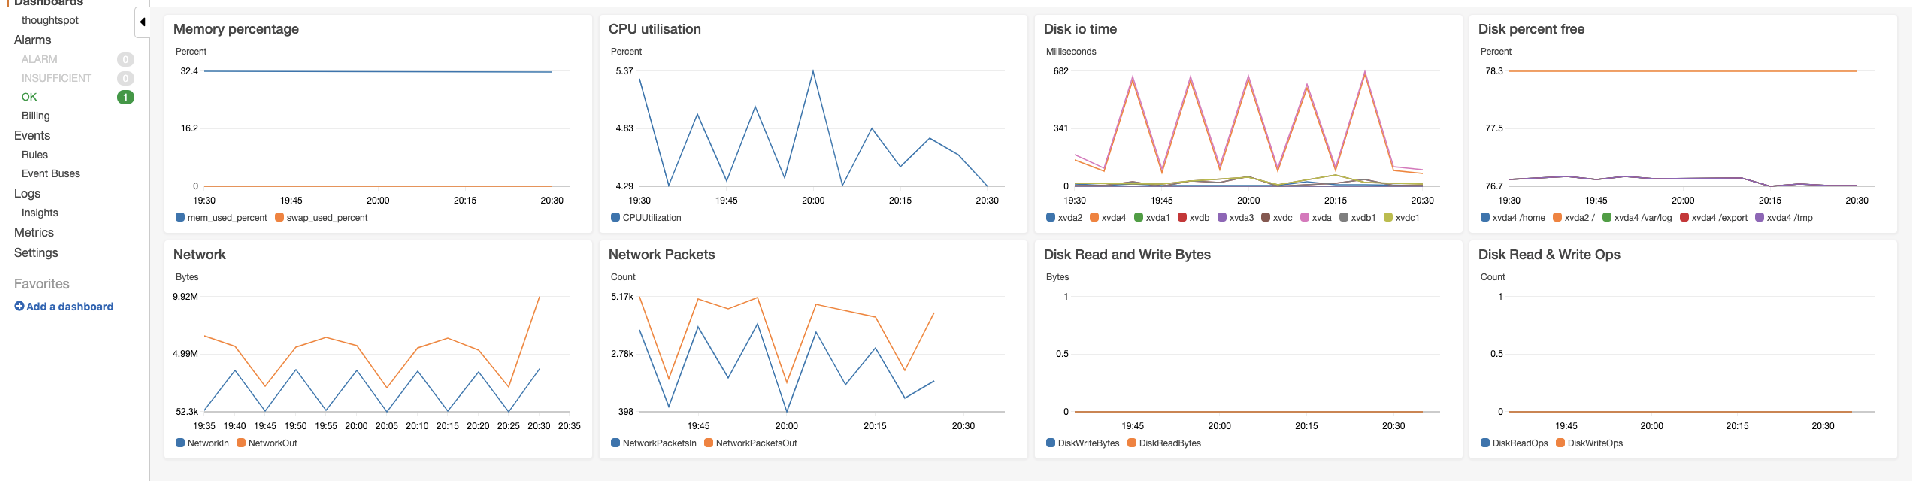 CloudWatch dashboard showing agent metrics